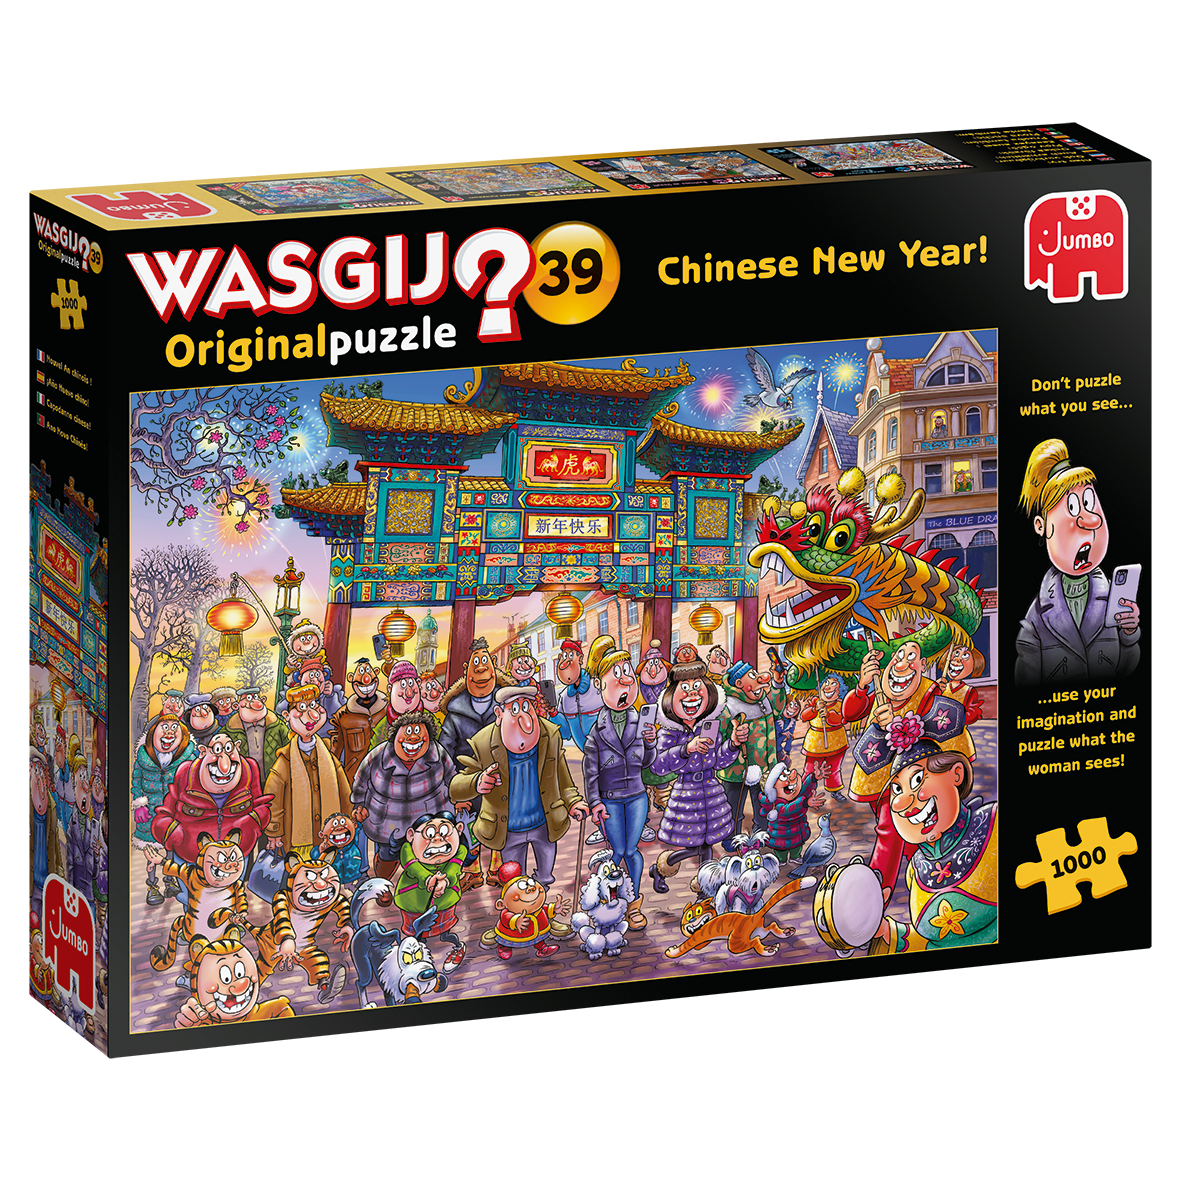 Wasgij Original 39 Chinese New Year